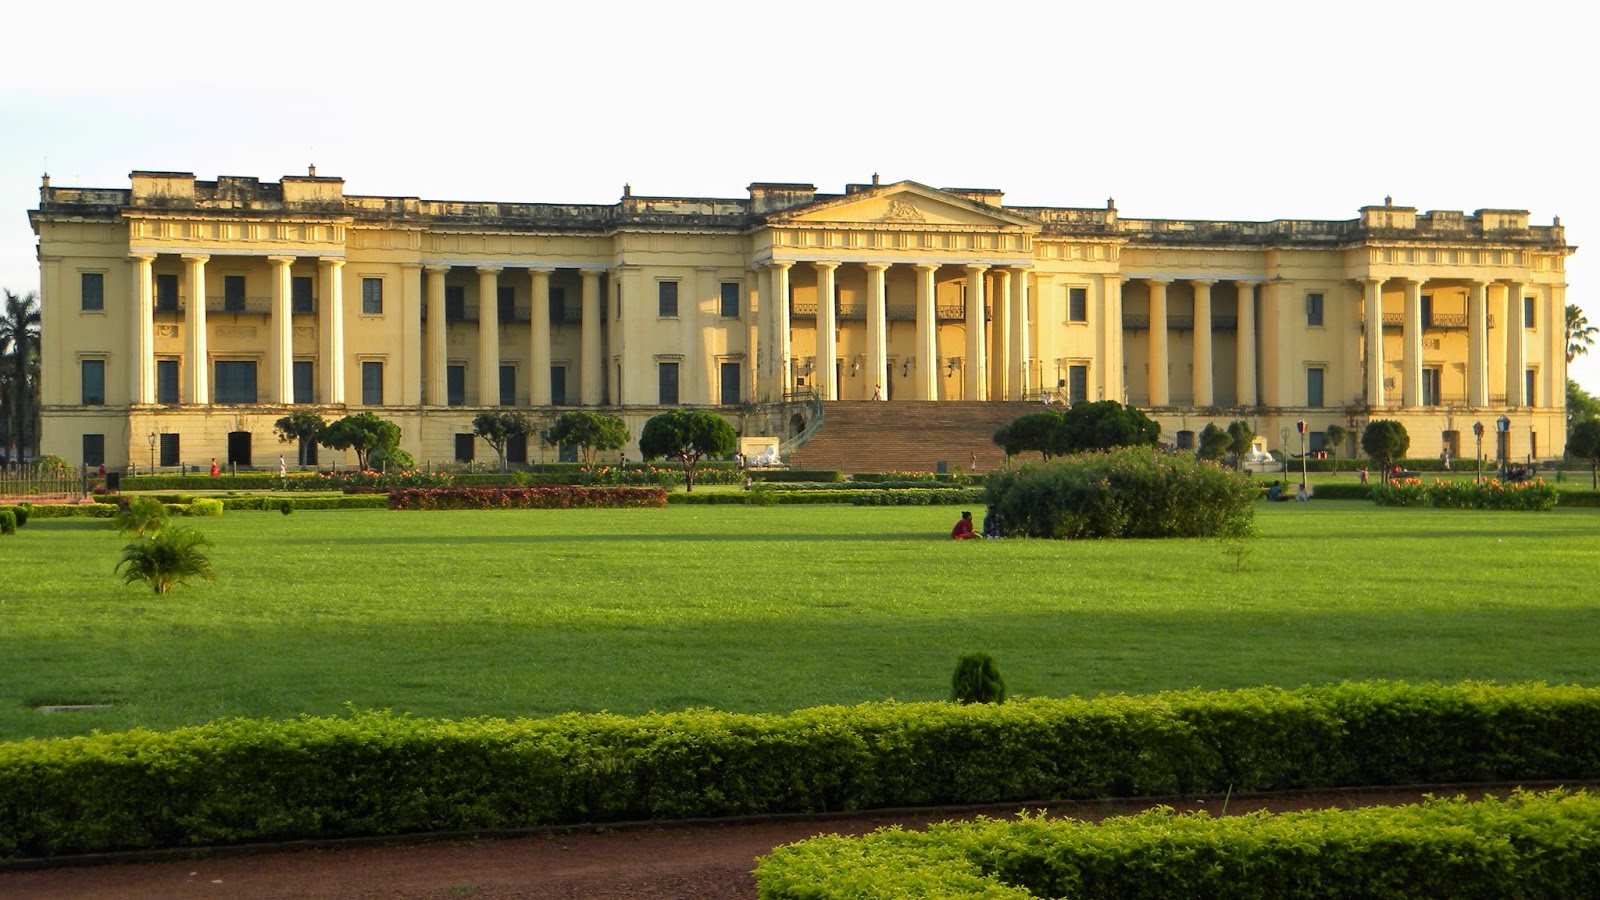 Hazarduari-palace-in Murshidabad-West Bengal